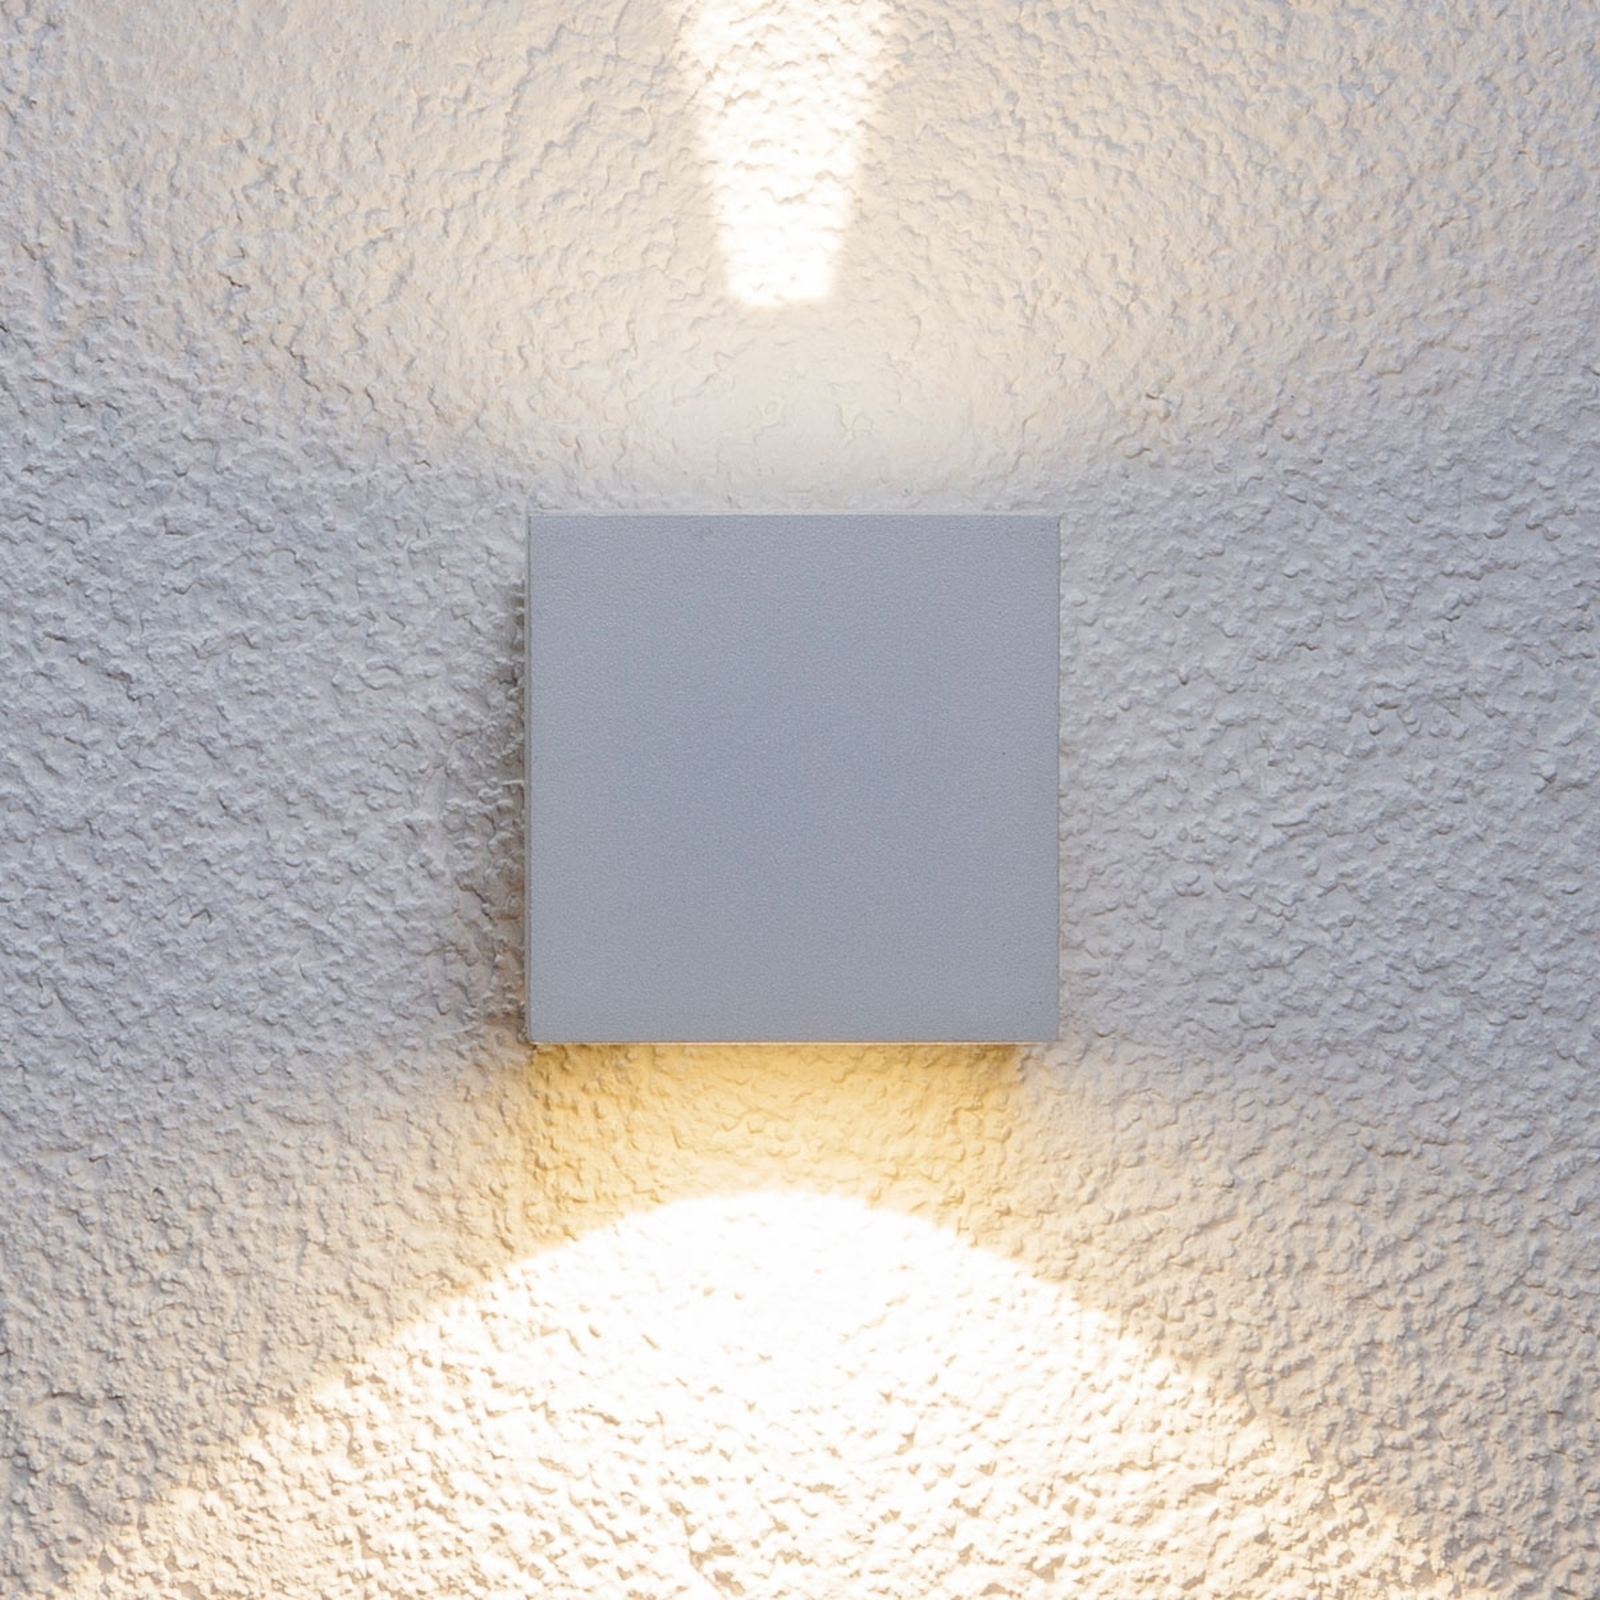 Applique d'extérieur LED Jarno blanche, cube